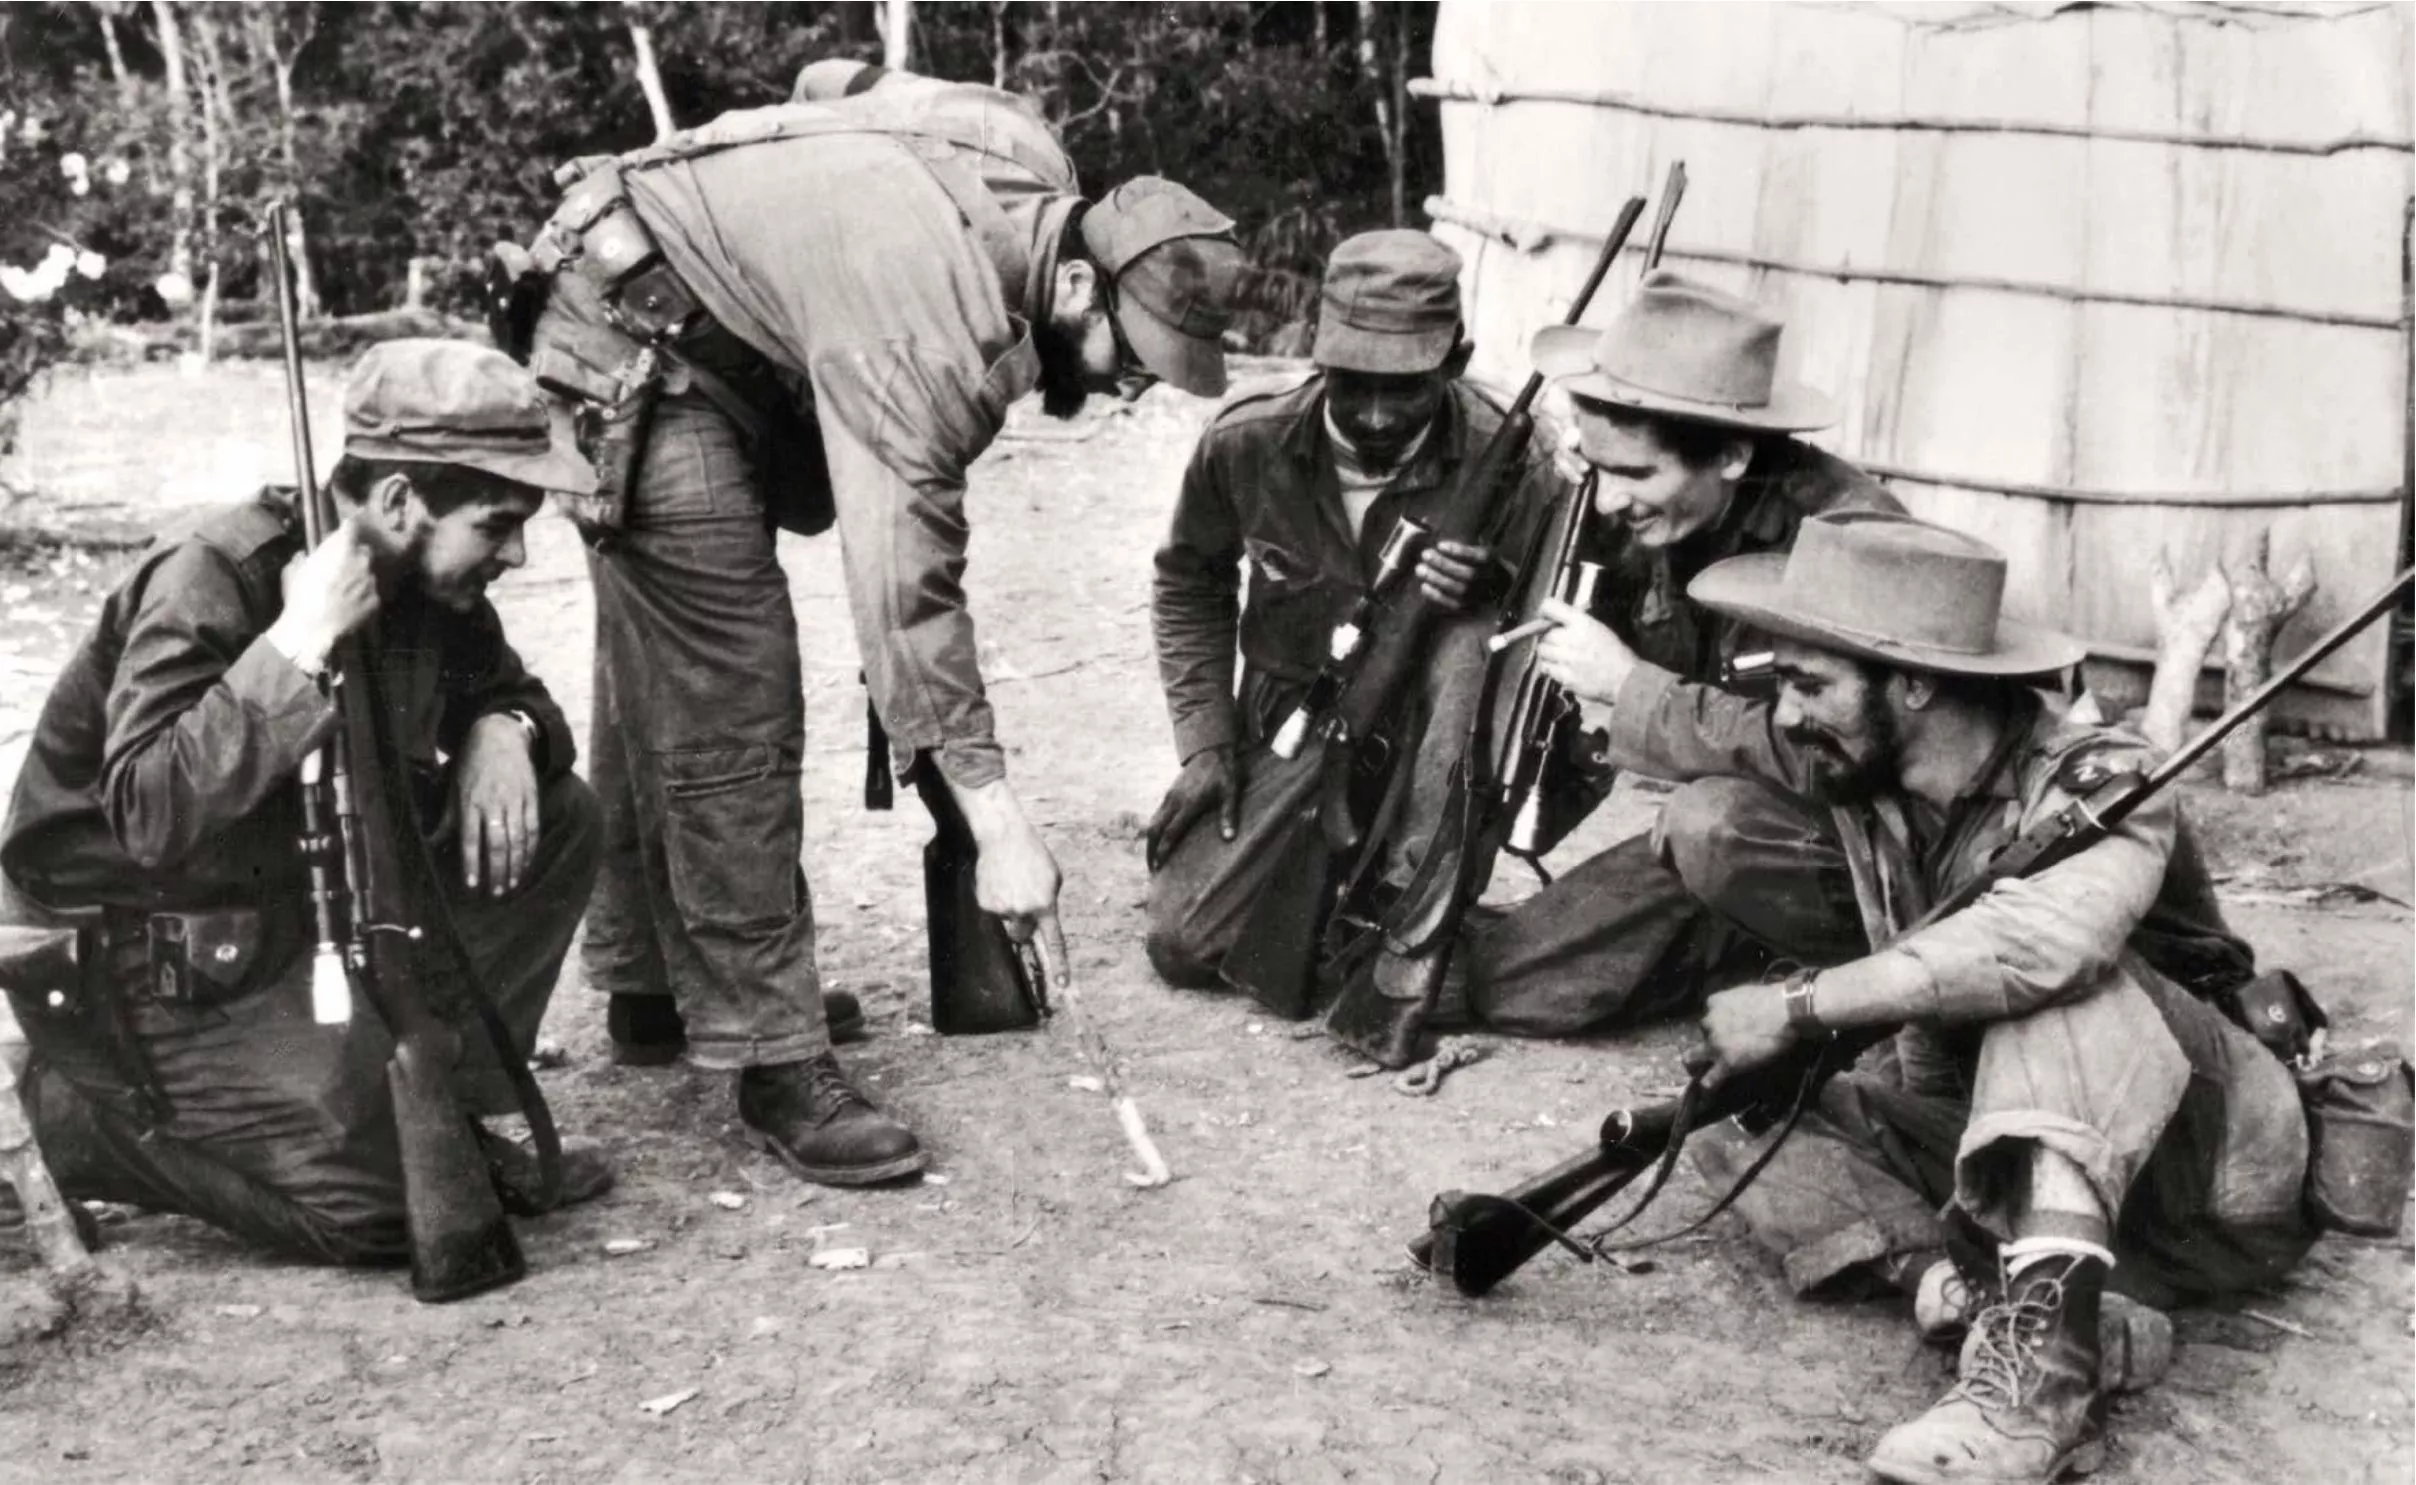 Després del fracàs de l’assalt a la caserna de Moncada, Castro i Guevara van ser conscients que, per derrocar Batista, necessitaven entrenament militar i van confiar en Bayo